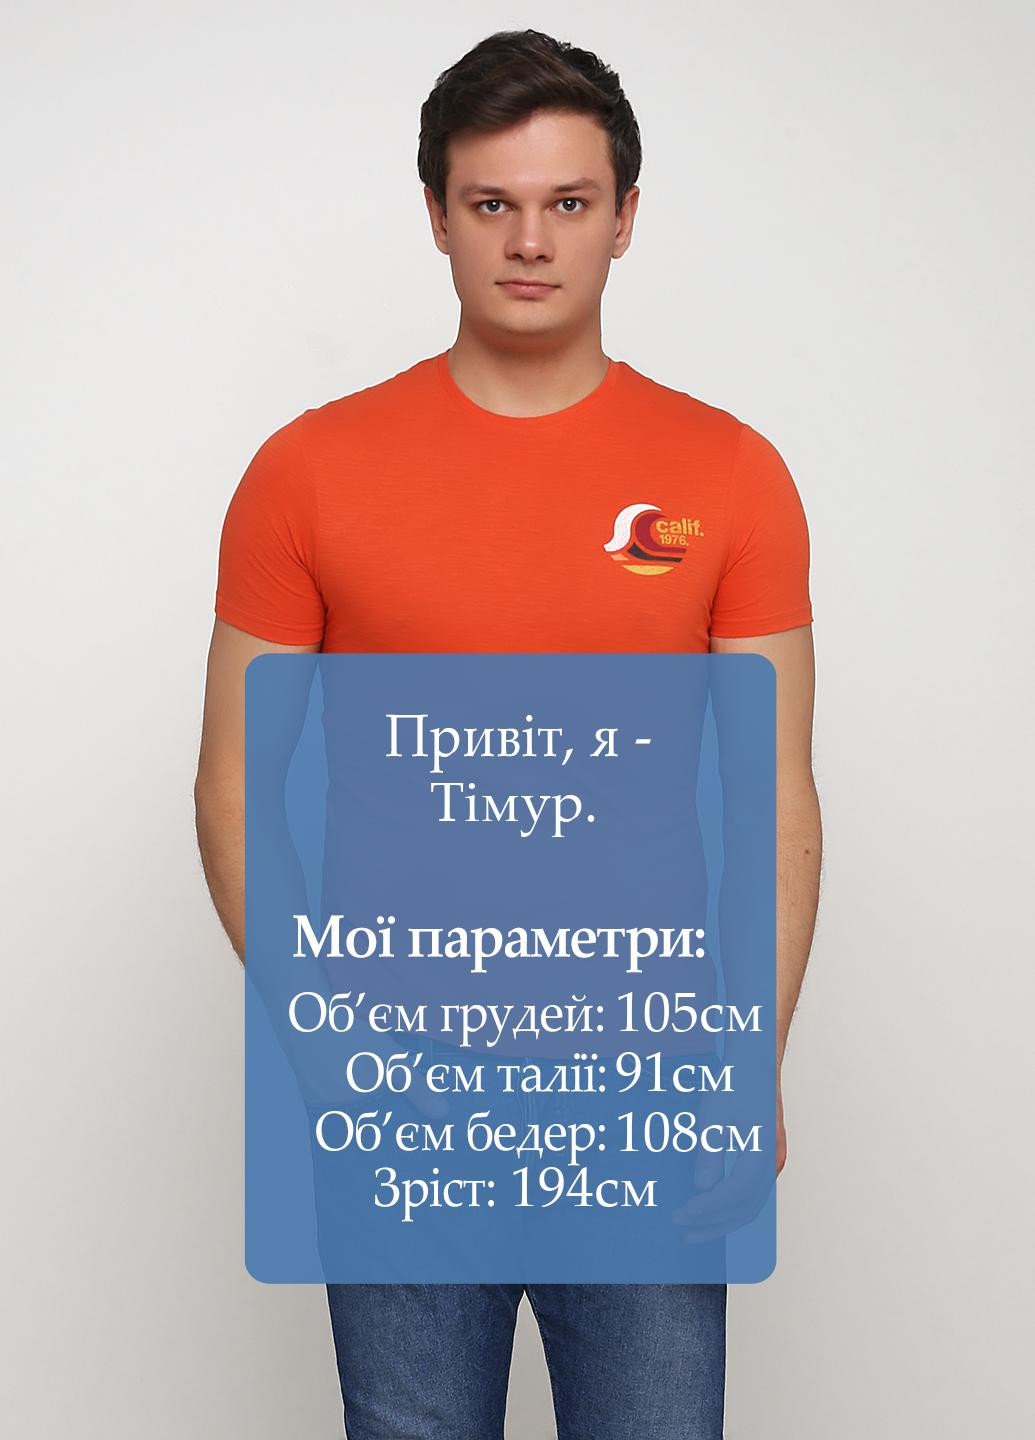 Оранжевая футболка Celio